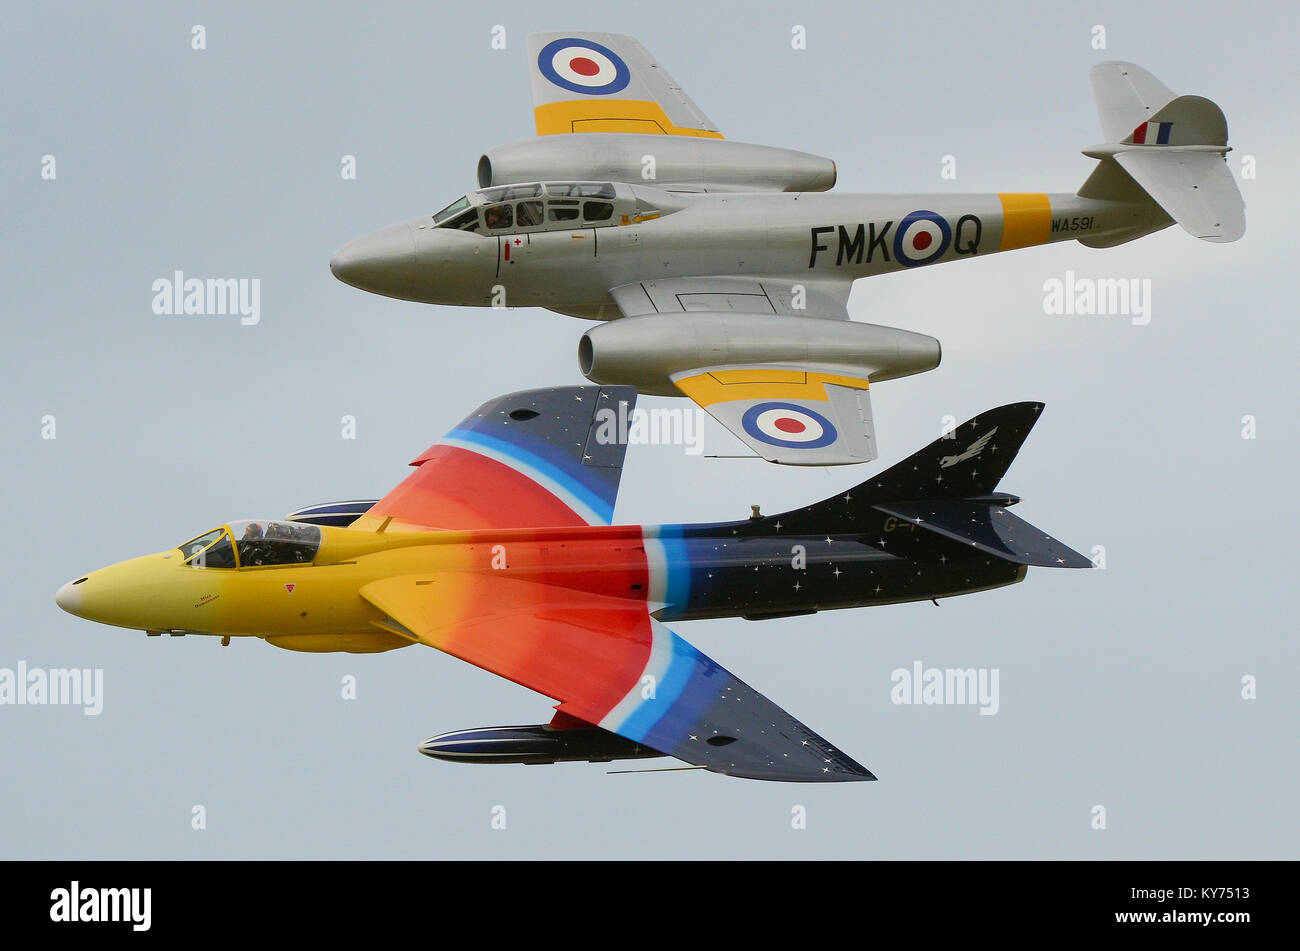 Klassische Vintage-Jets von Hawker Hunter und Gloster Meteor. Klassisches Paar britischer Düsenflugzeuge, die bei einer Flugschau fliegen Stockfoto